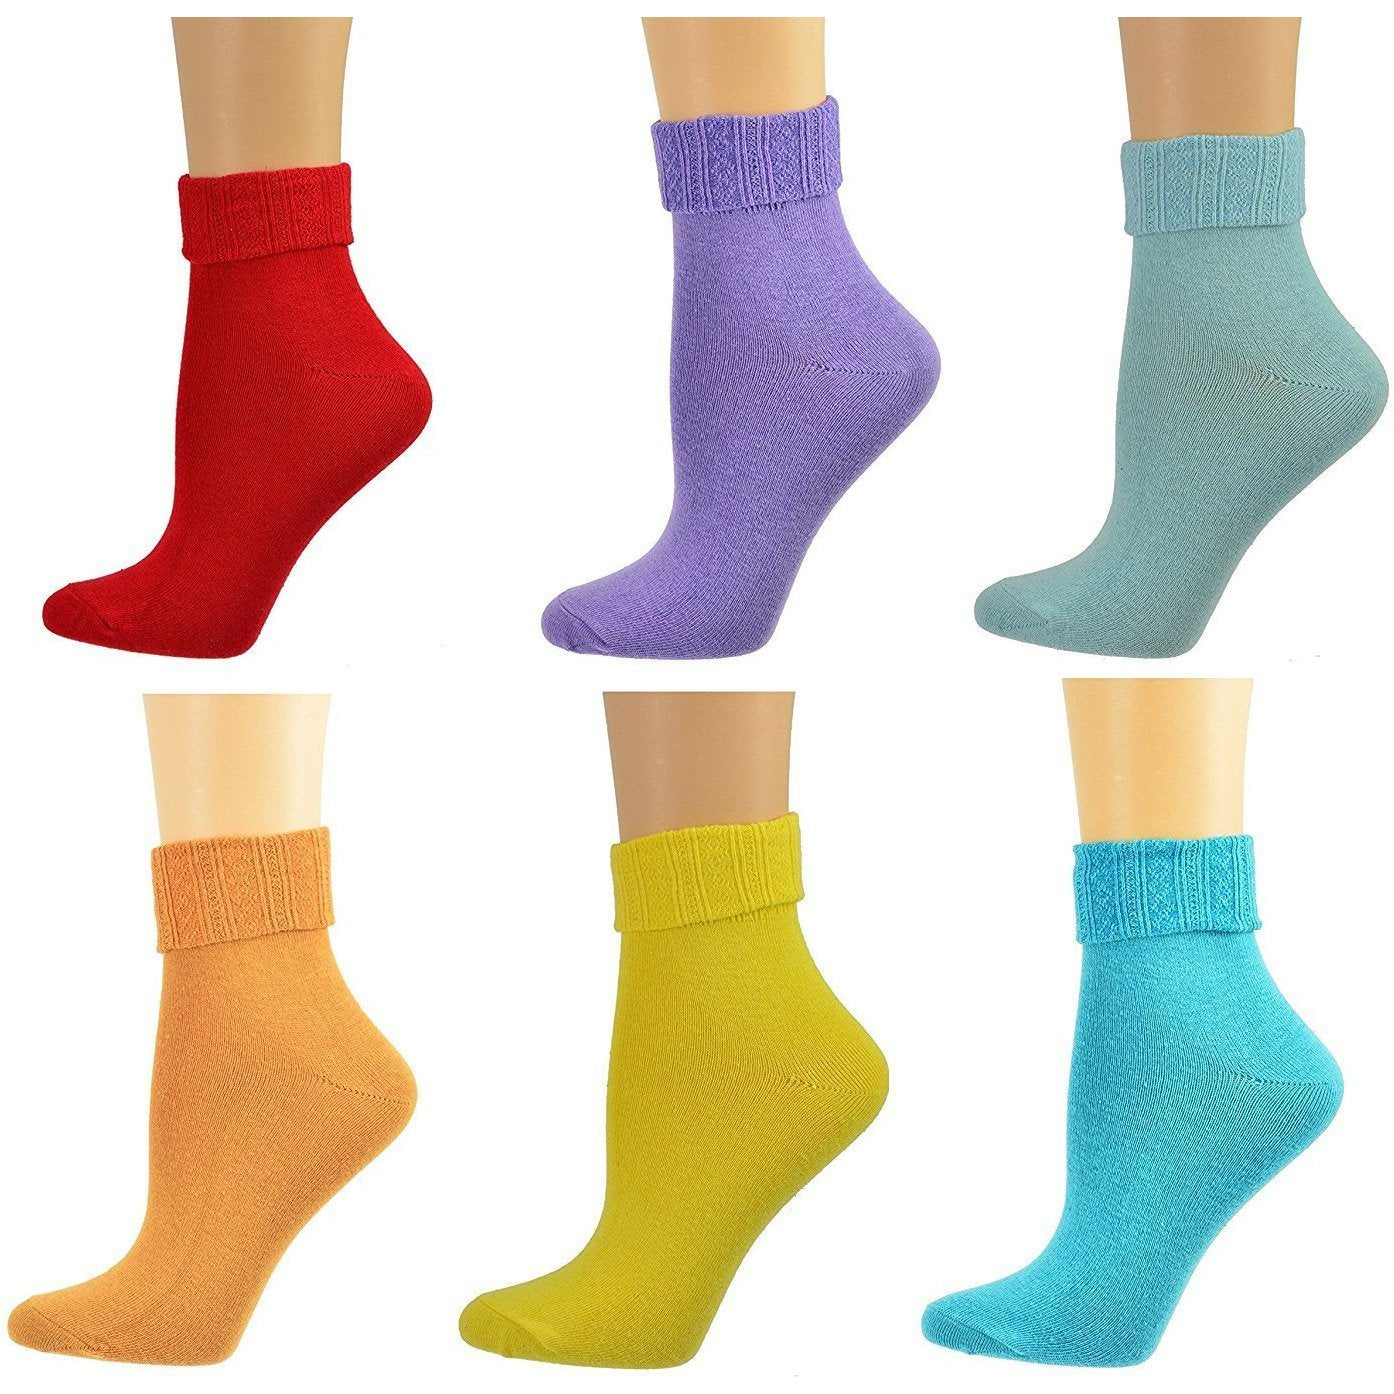 Women's Triple Cuff Cotton Socks